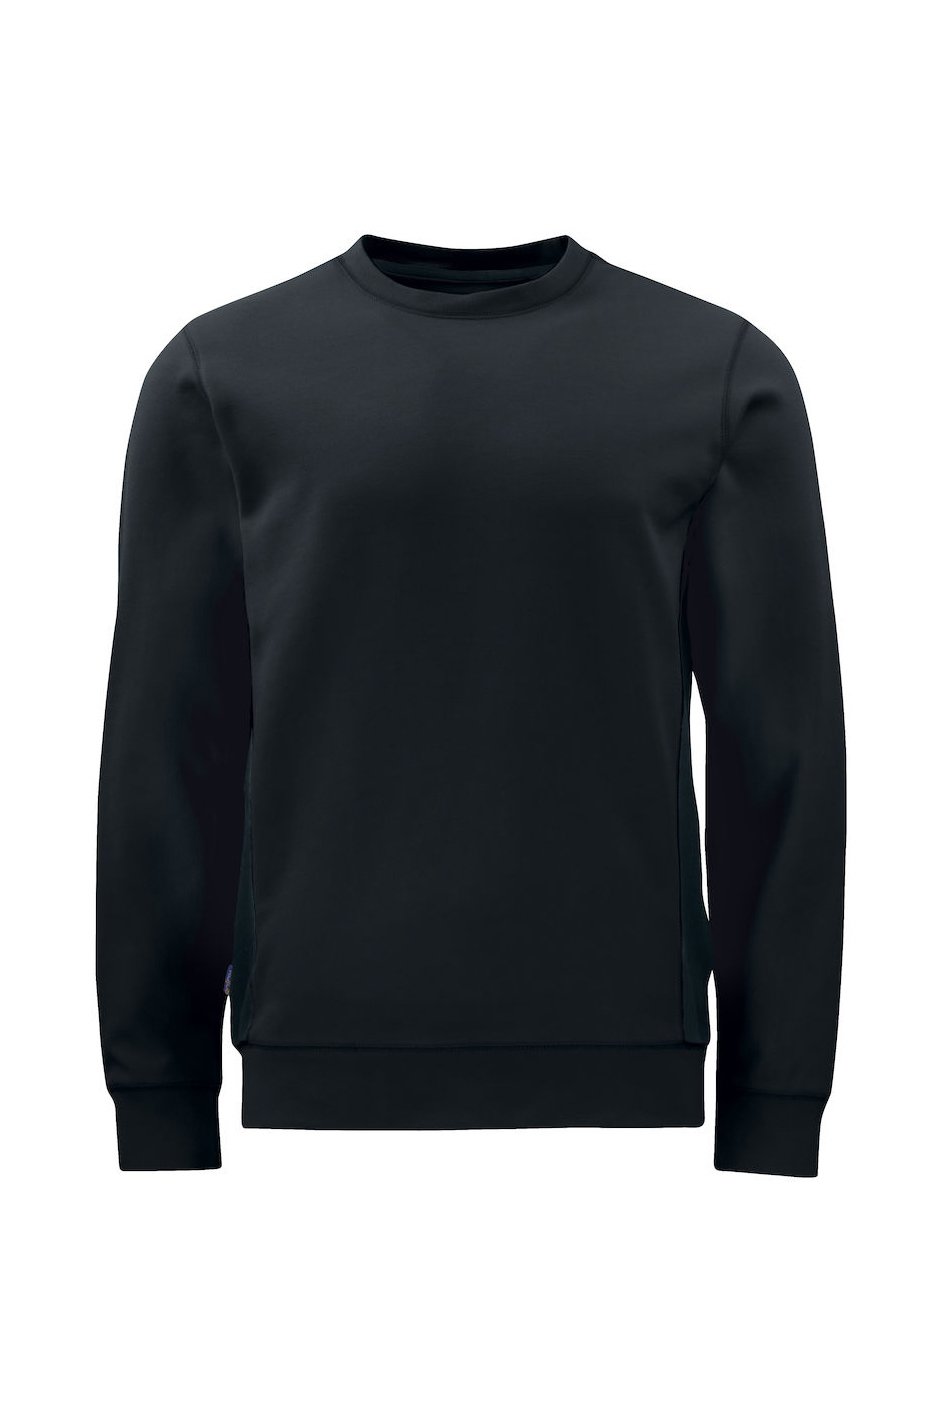 Sweatshirt mit Kontrastelementen, schwarz